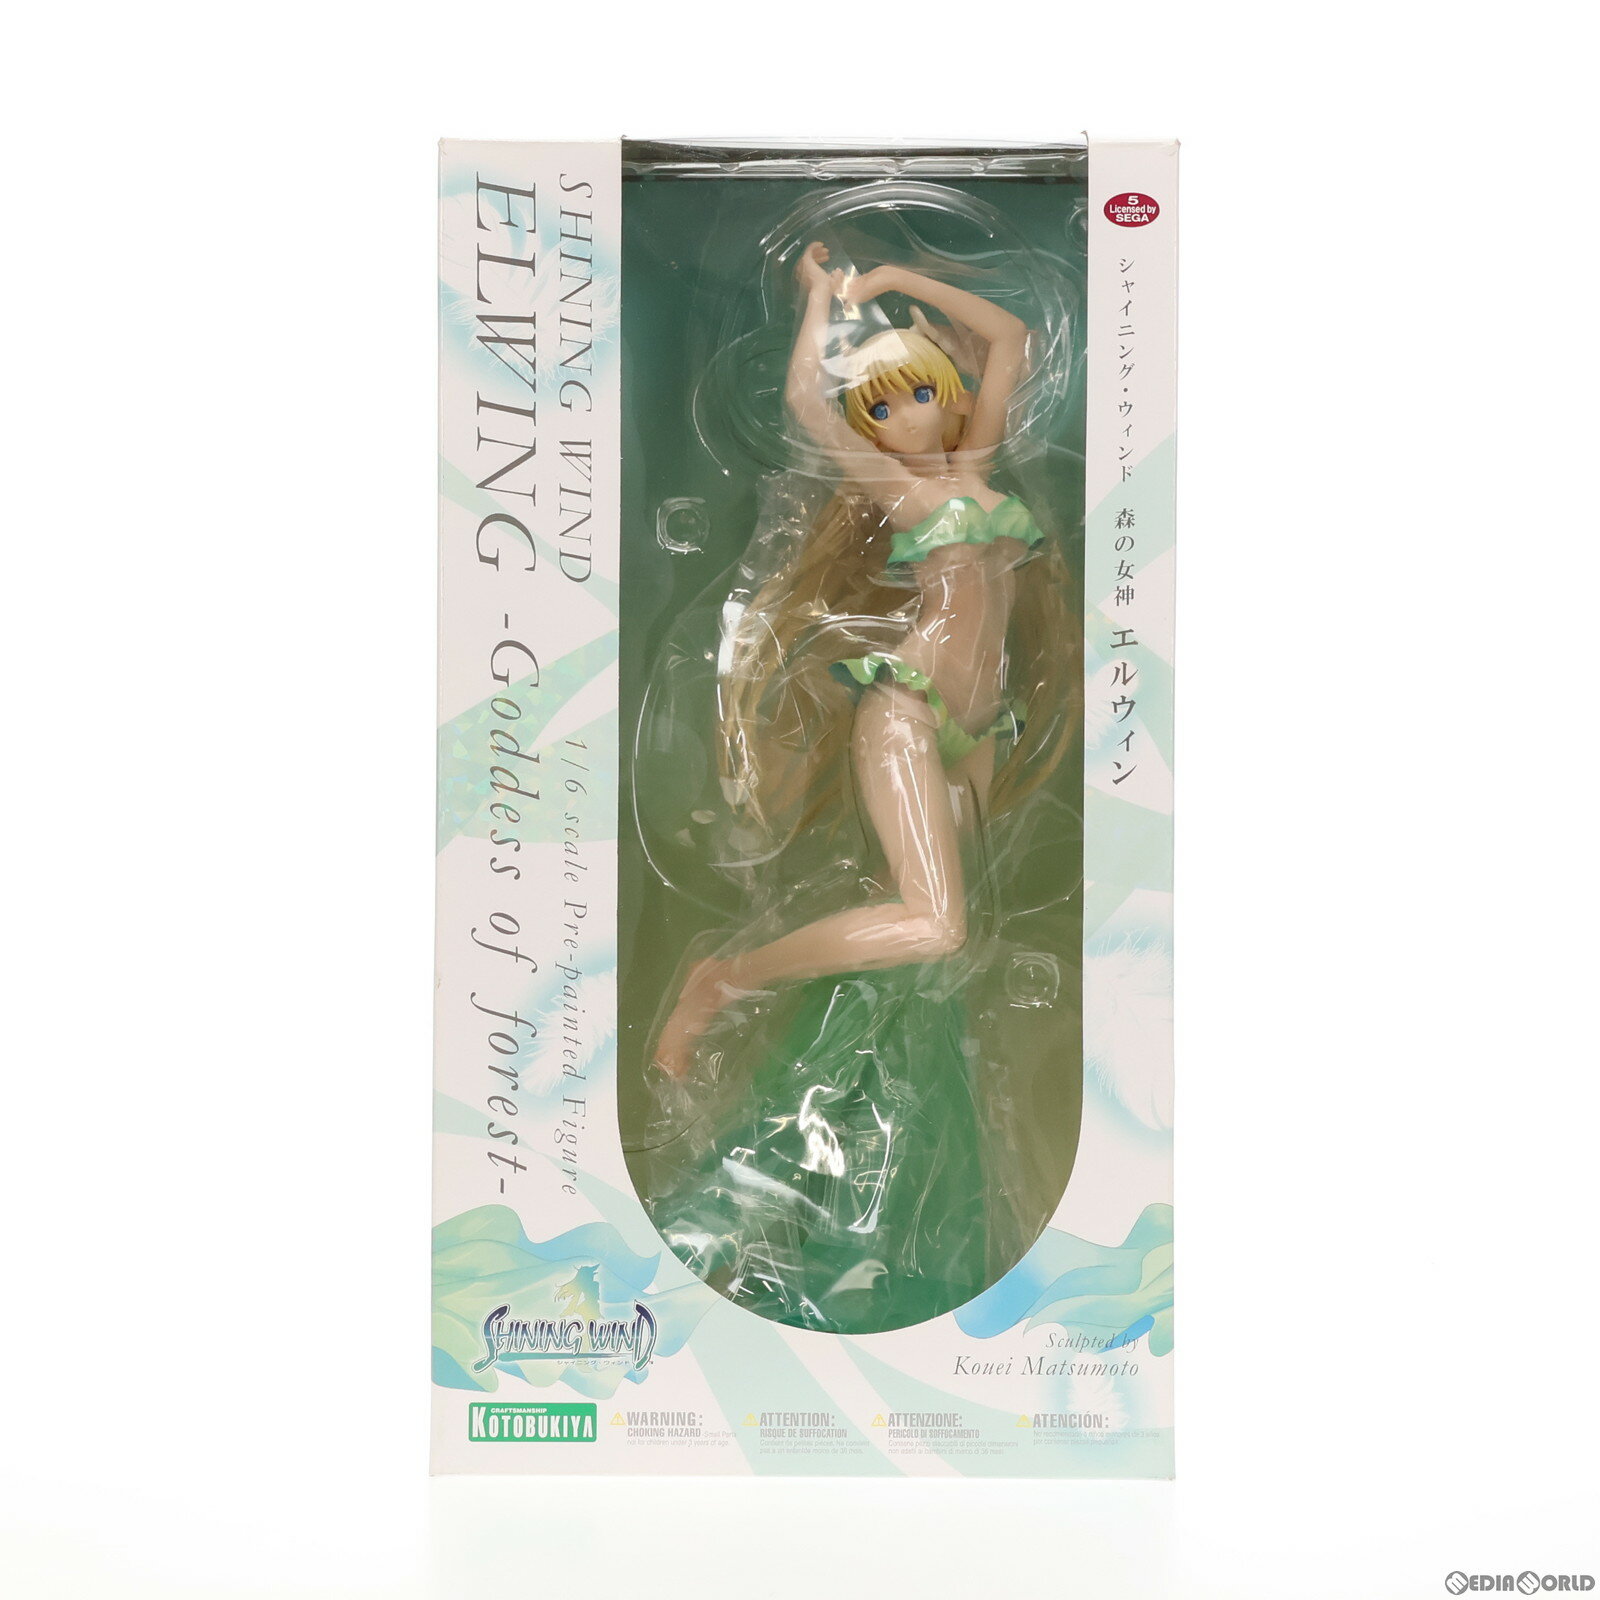 【中古】[FIG]森の女神 エルウィン シャイニング・ウィンド 1/6 完成品 フィギュア(PP336) コトブキヤ(20100430)